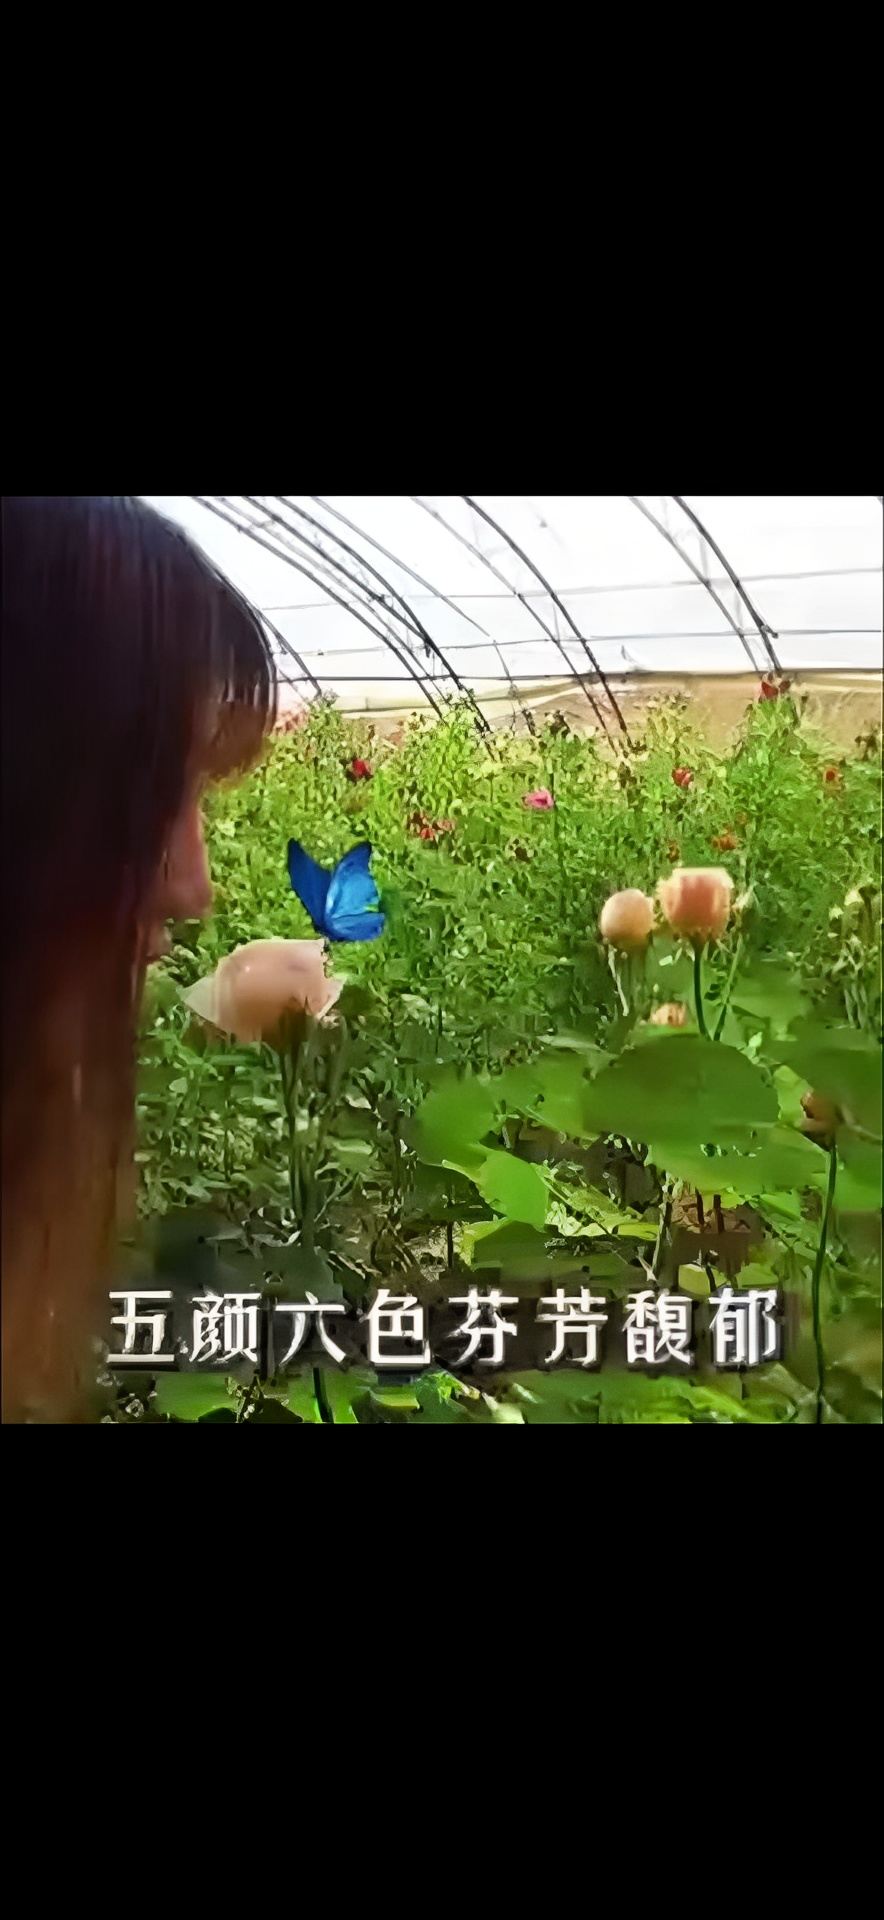 安徽肥西县金三合农业科技示范观光园